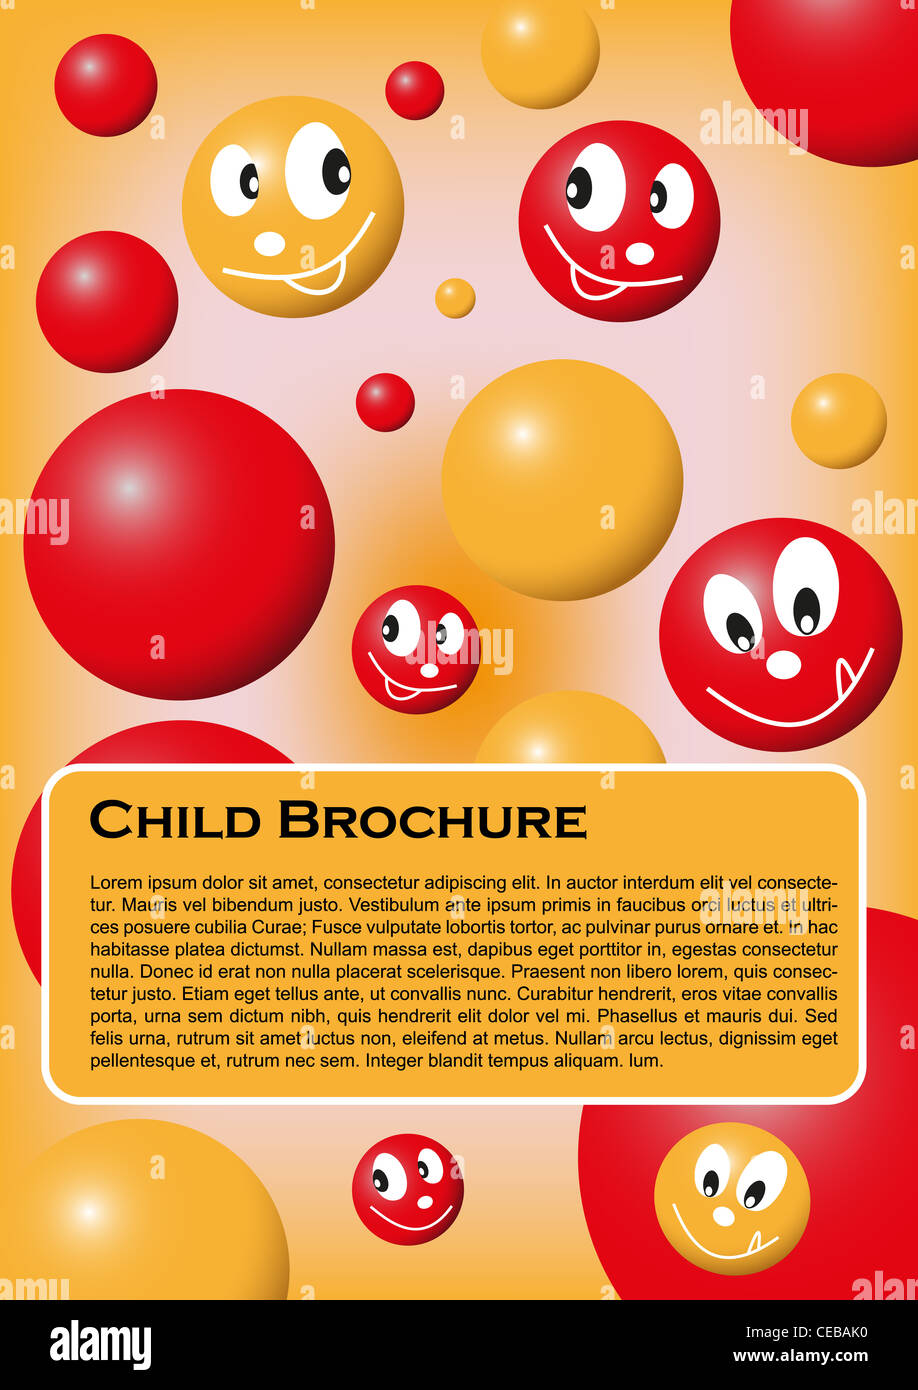 Abdeckung für Kind Broschüre oder Notizen mit farbigen Smilies und Kugeln Stockfoto